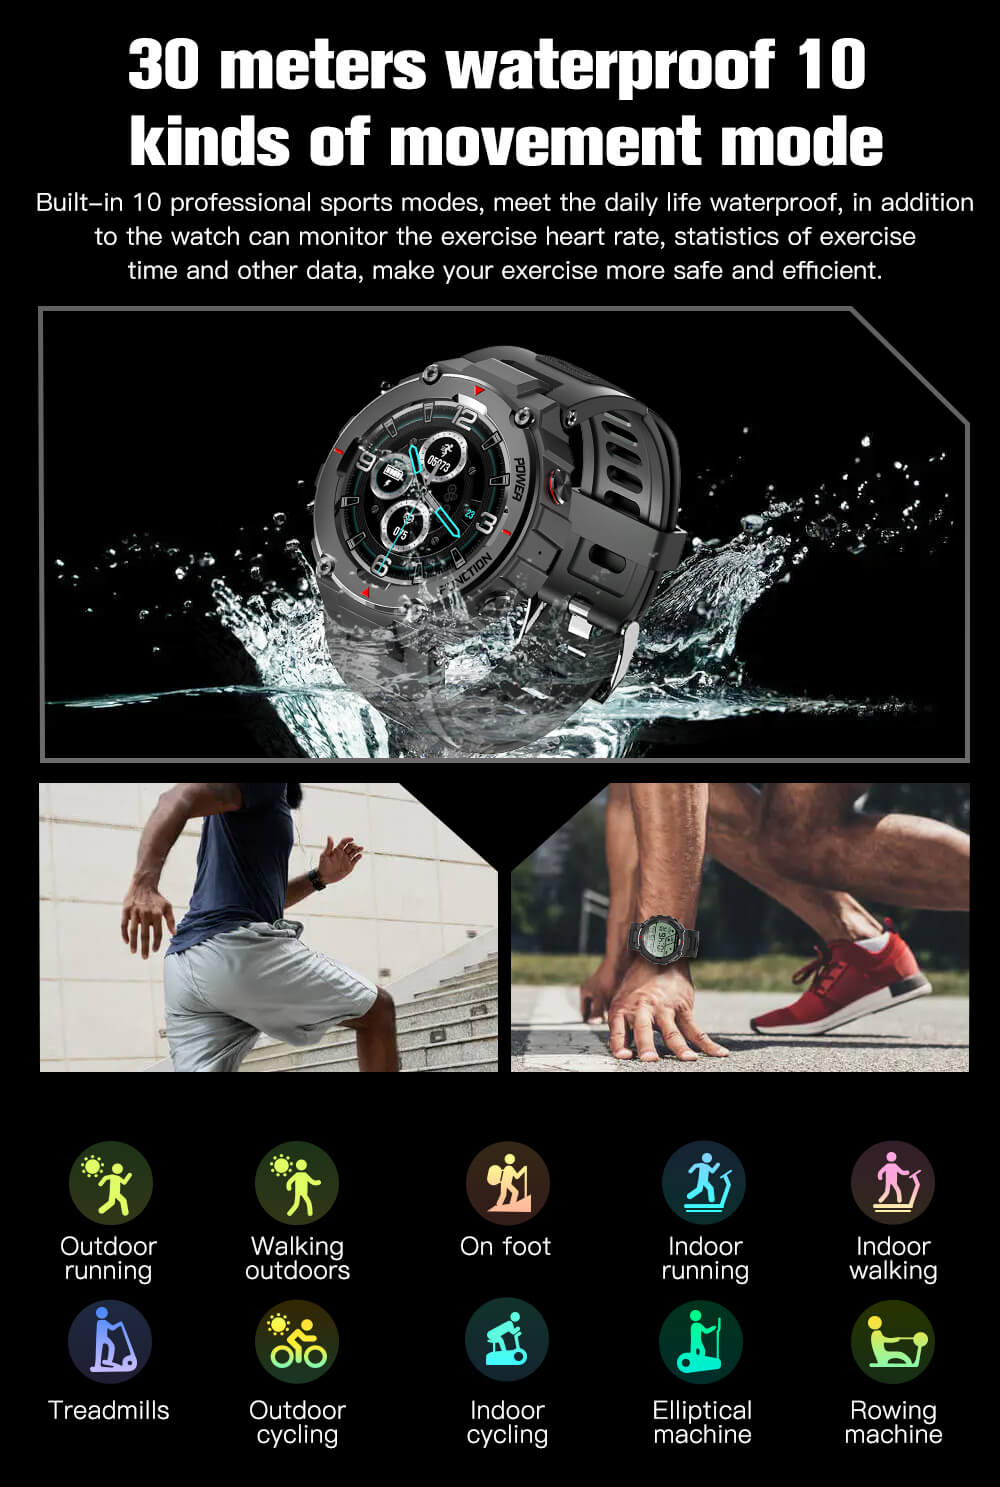 F26 Smartwatch con schermo rotondo più venduto di Amazon-Shenzhen Shengye Technology Co.,Ltd